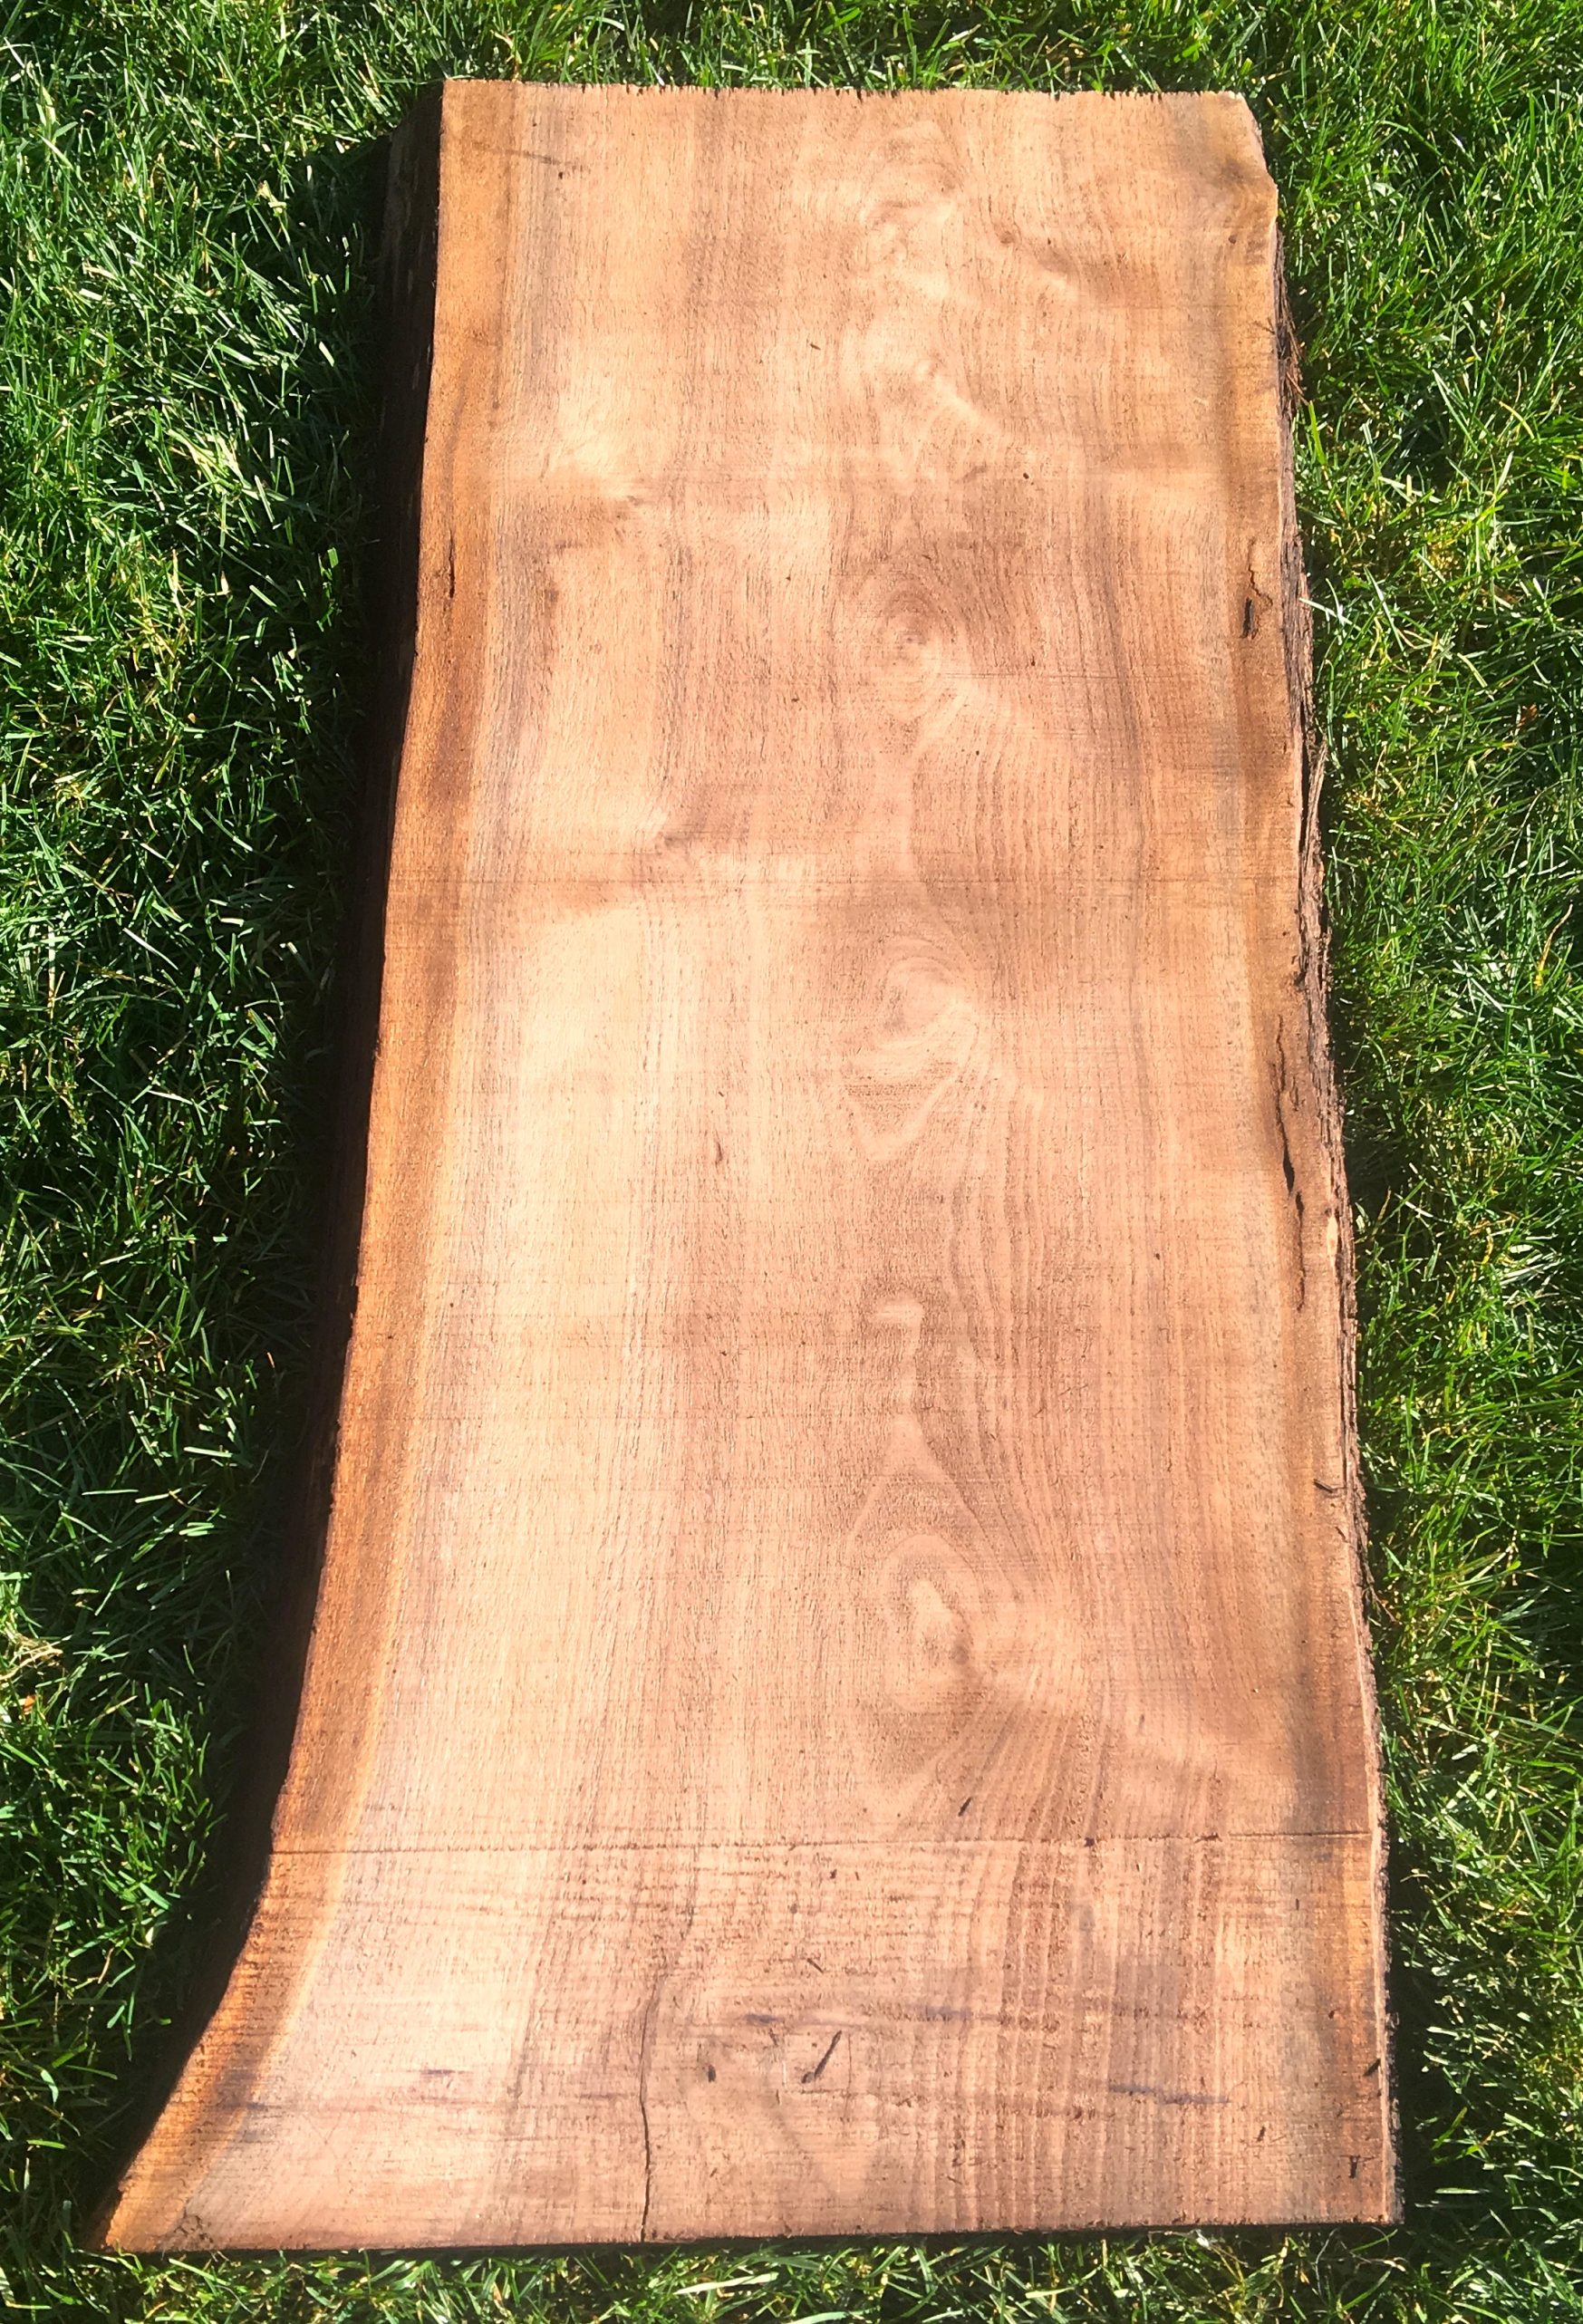 Live Edge Walnut Wood Slab 34 1 2 X 14 1 2 X 1 7 8 Kiln Dried Rustic Walnut Natural Edge Frison Logue Hardwoods